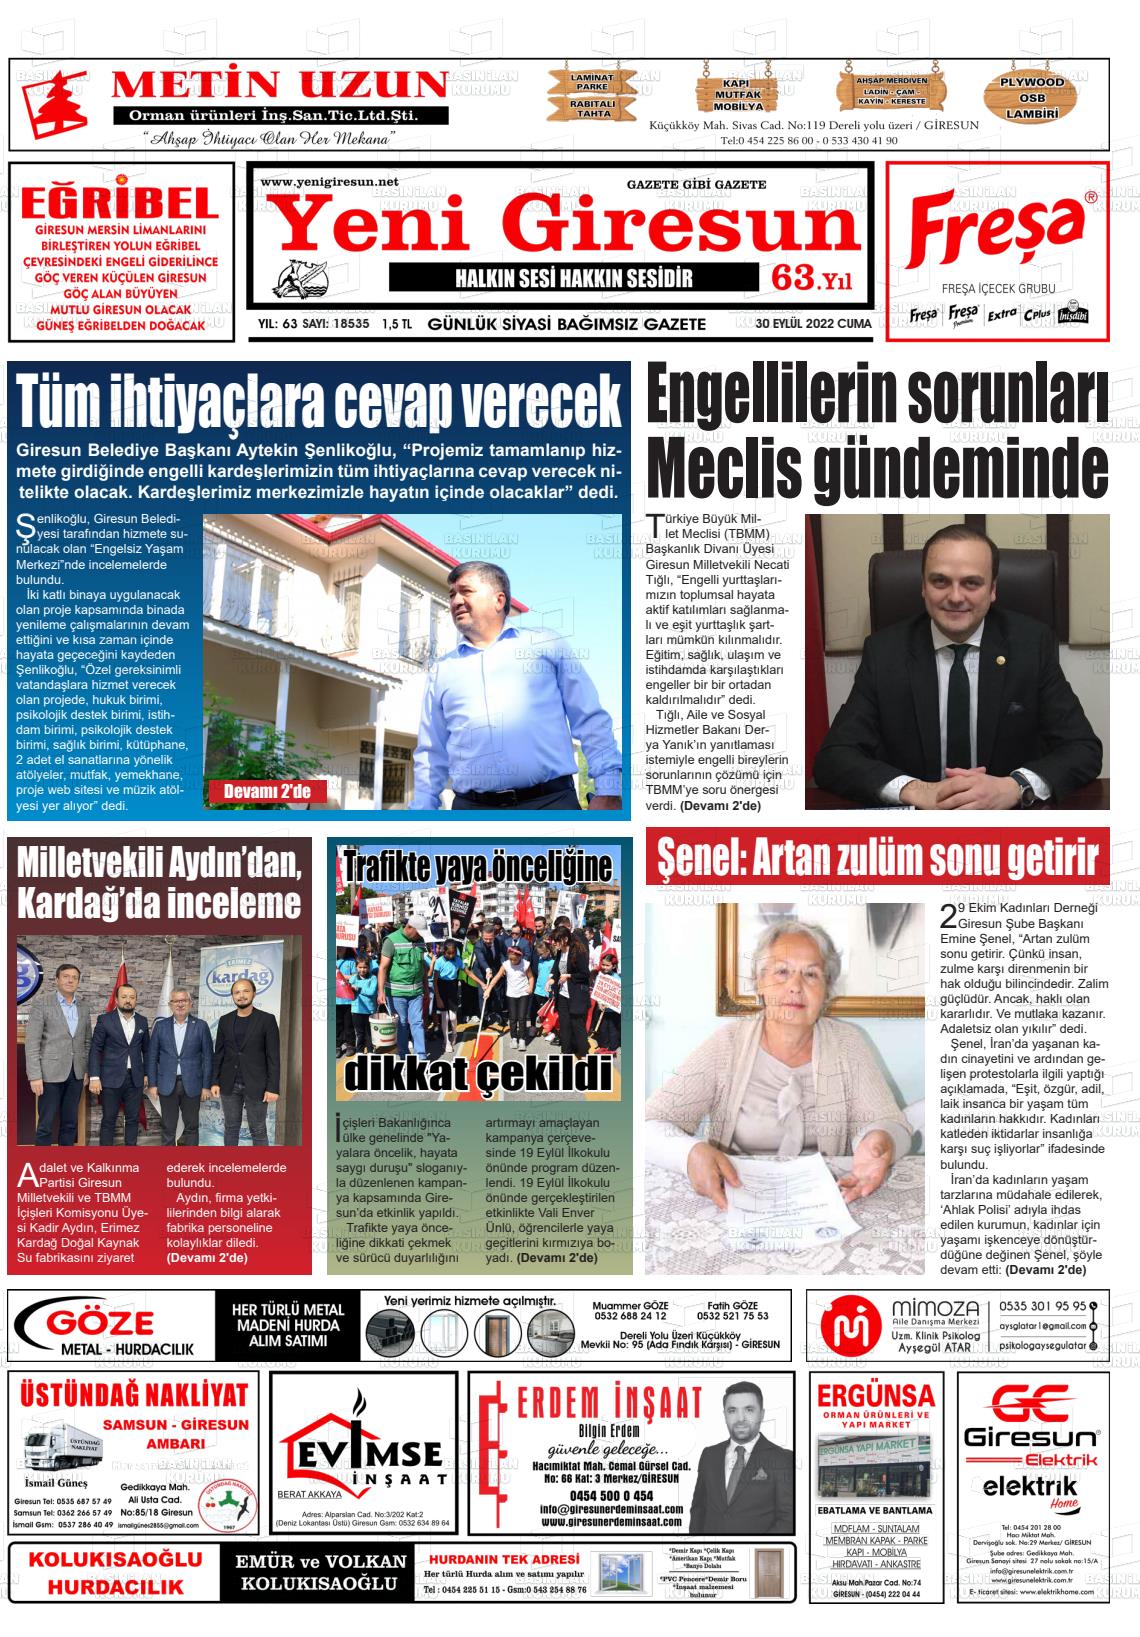 30 Eylül 2022 Yeni Giresun Gazete Manşeti